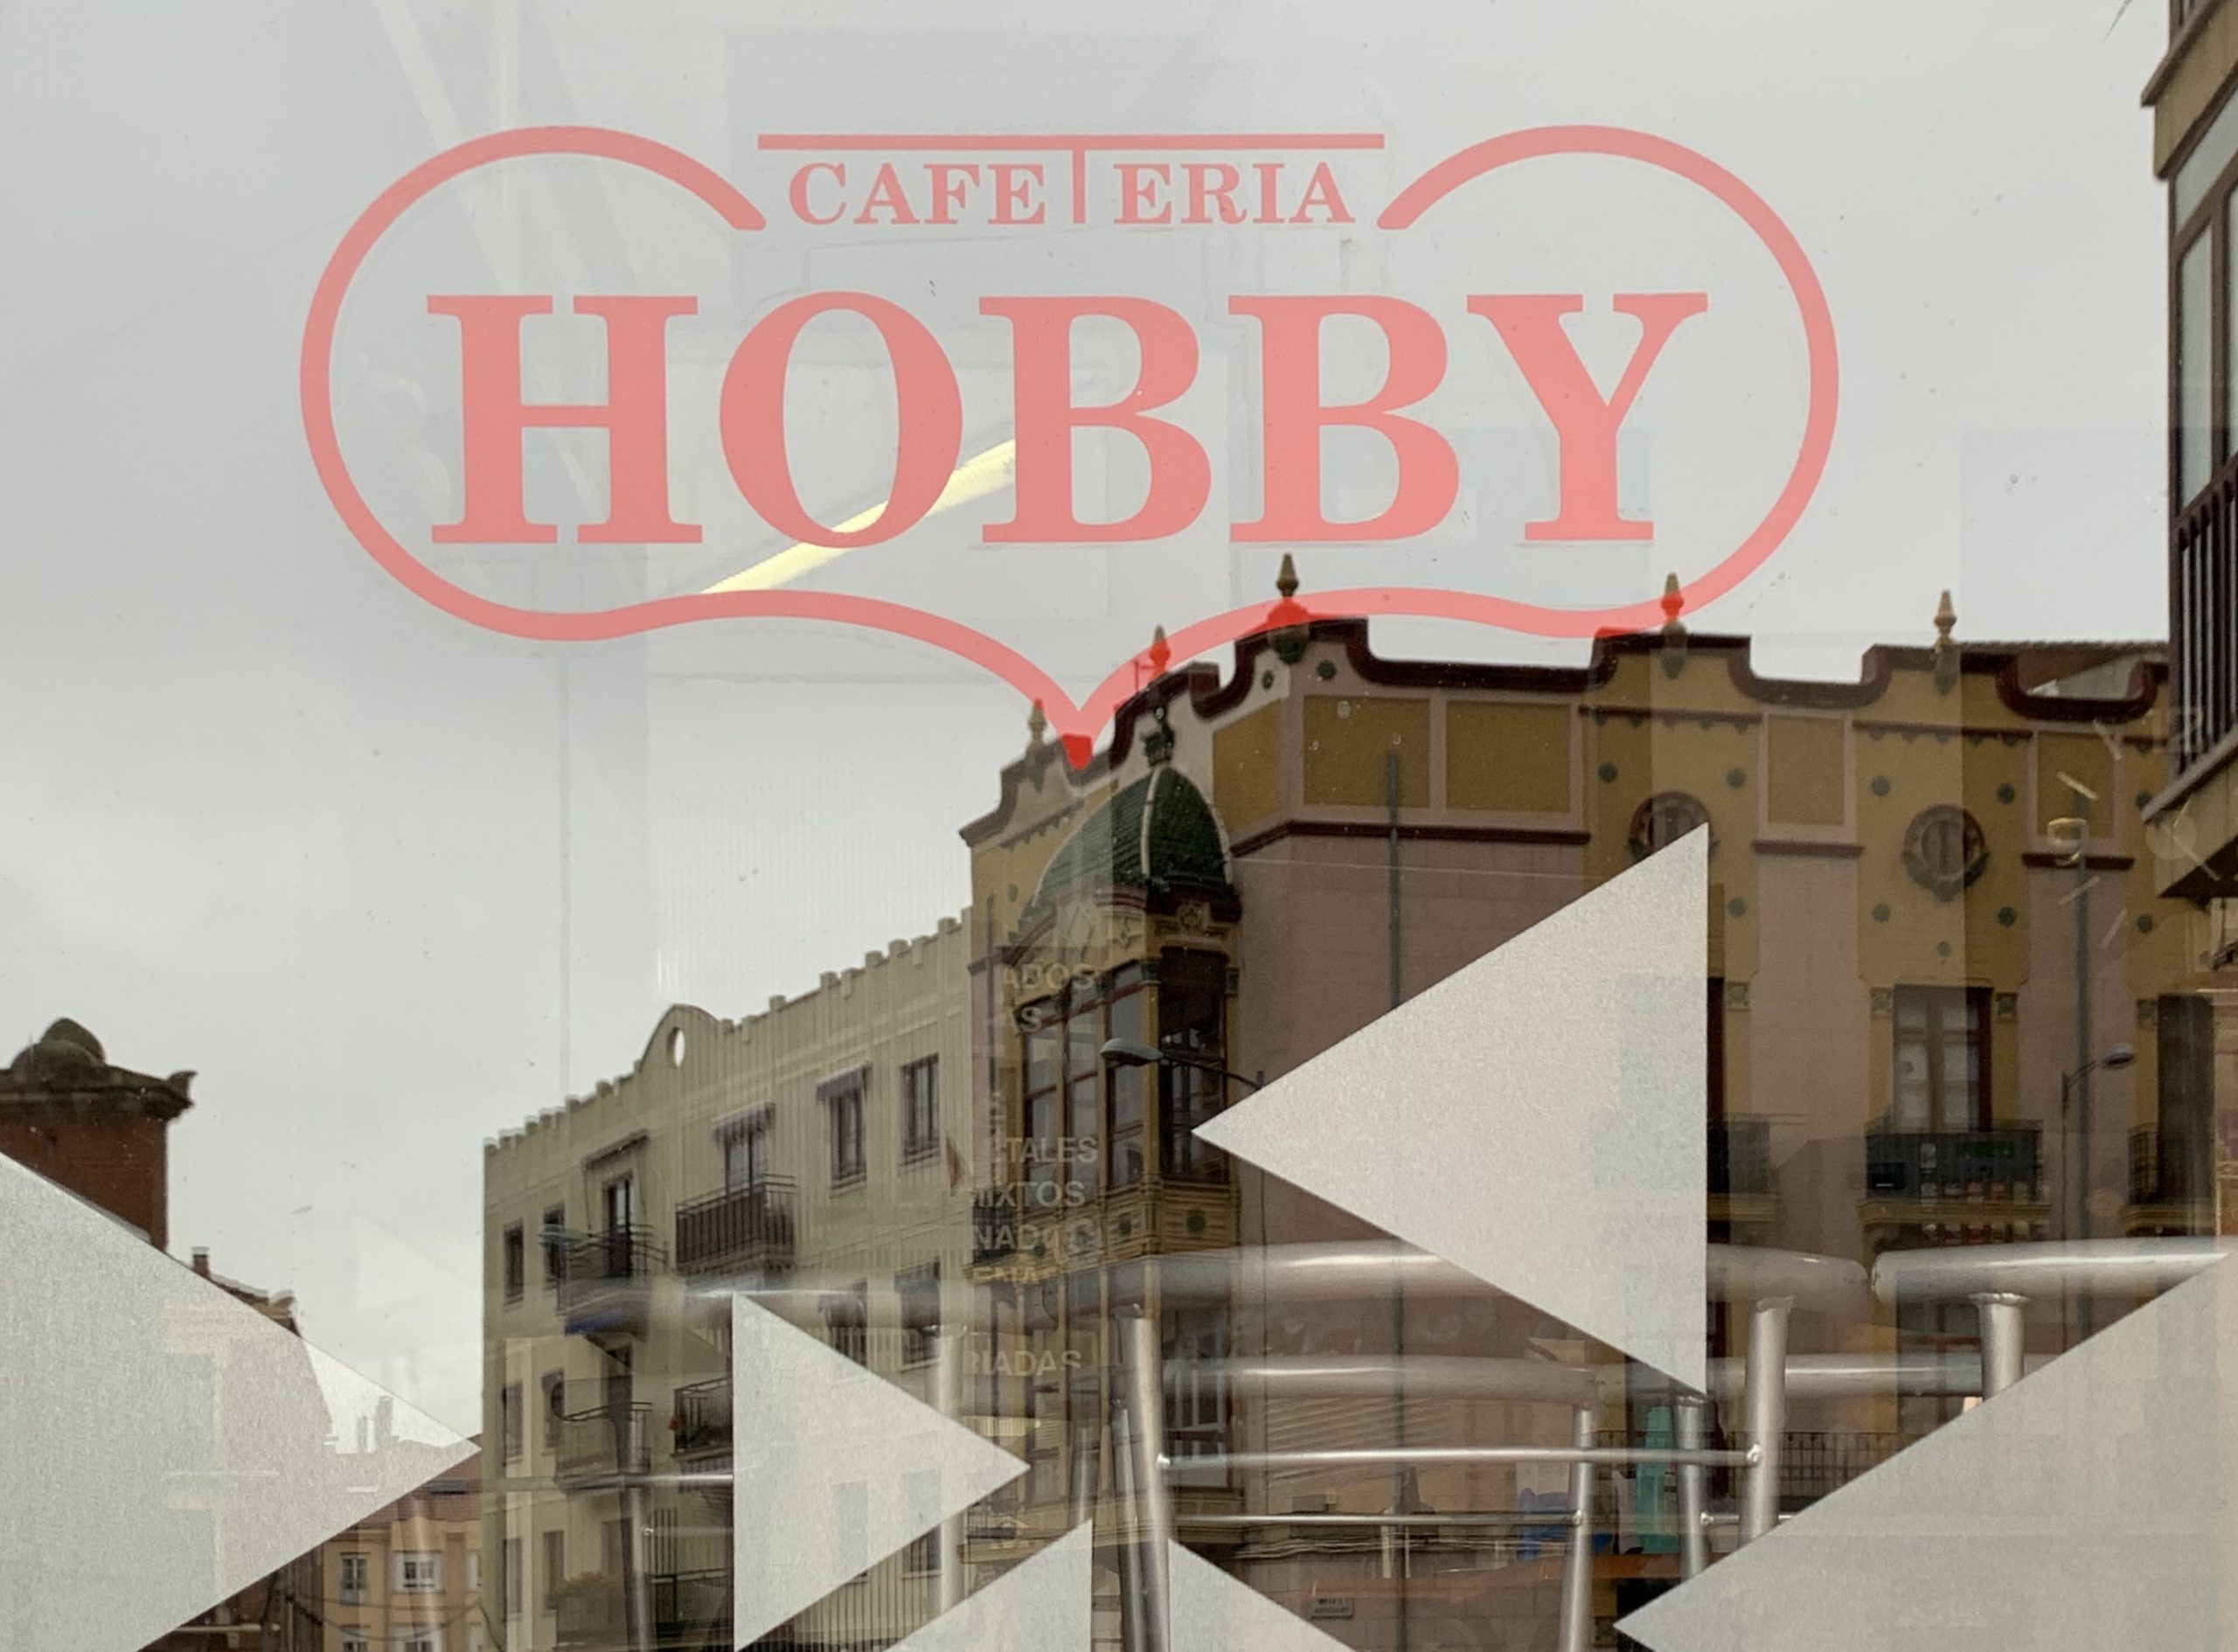 Hobby Cafetería Restaurante